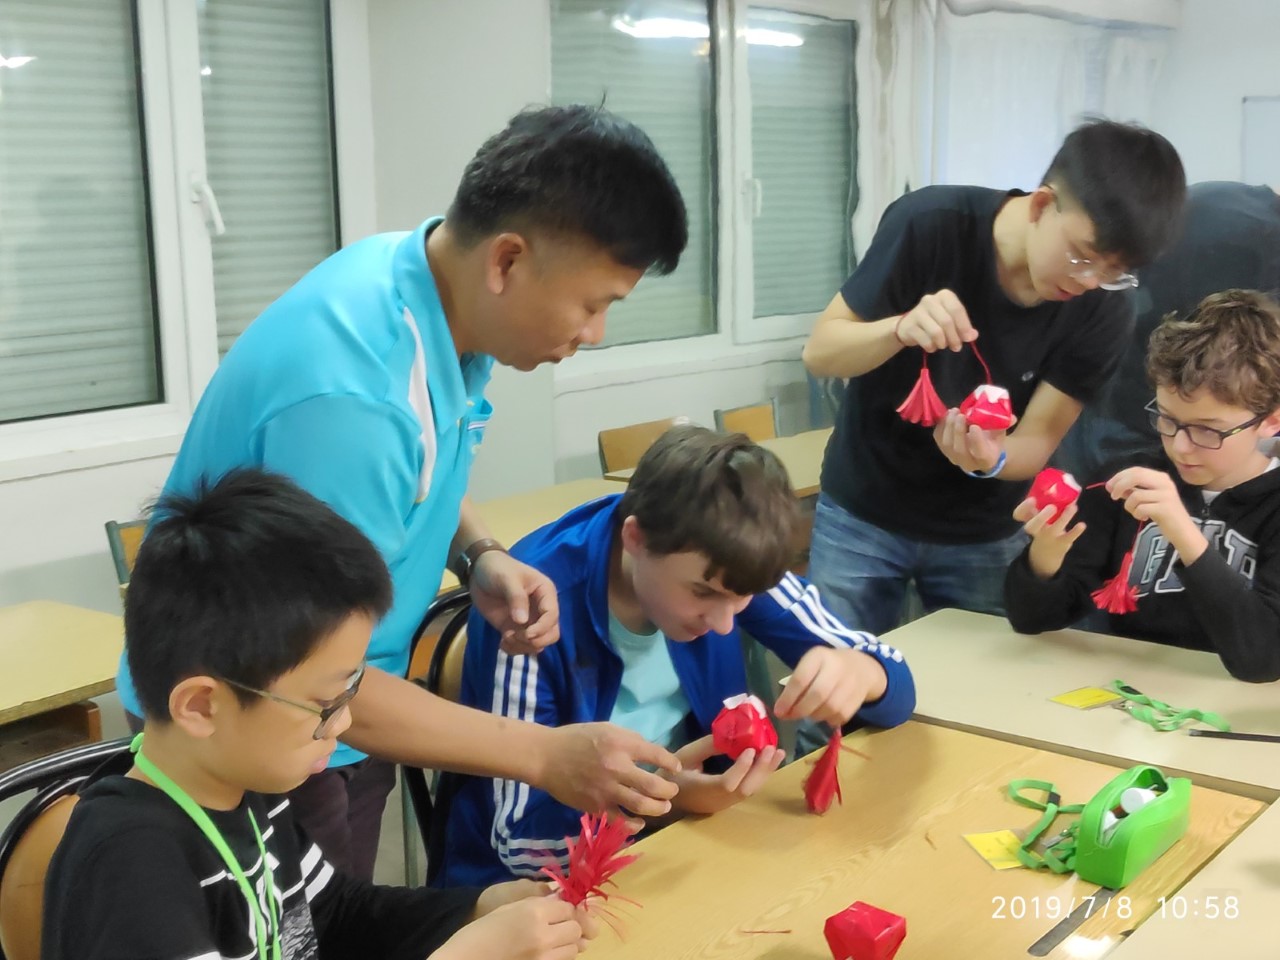 僑委會外派文化民俗技藝導師潘同泰老師教導學生做天燈